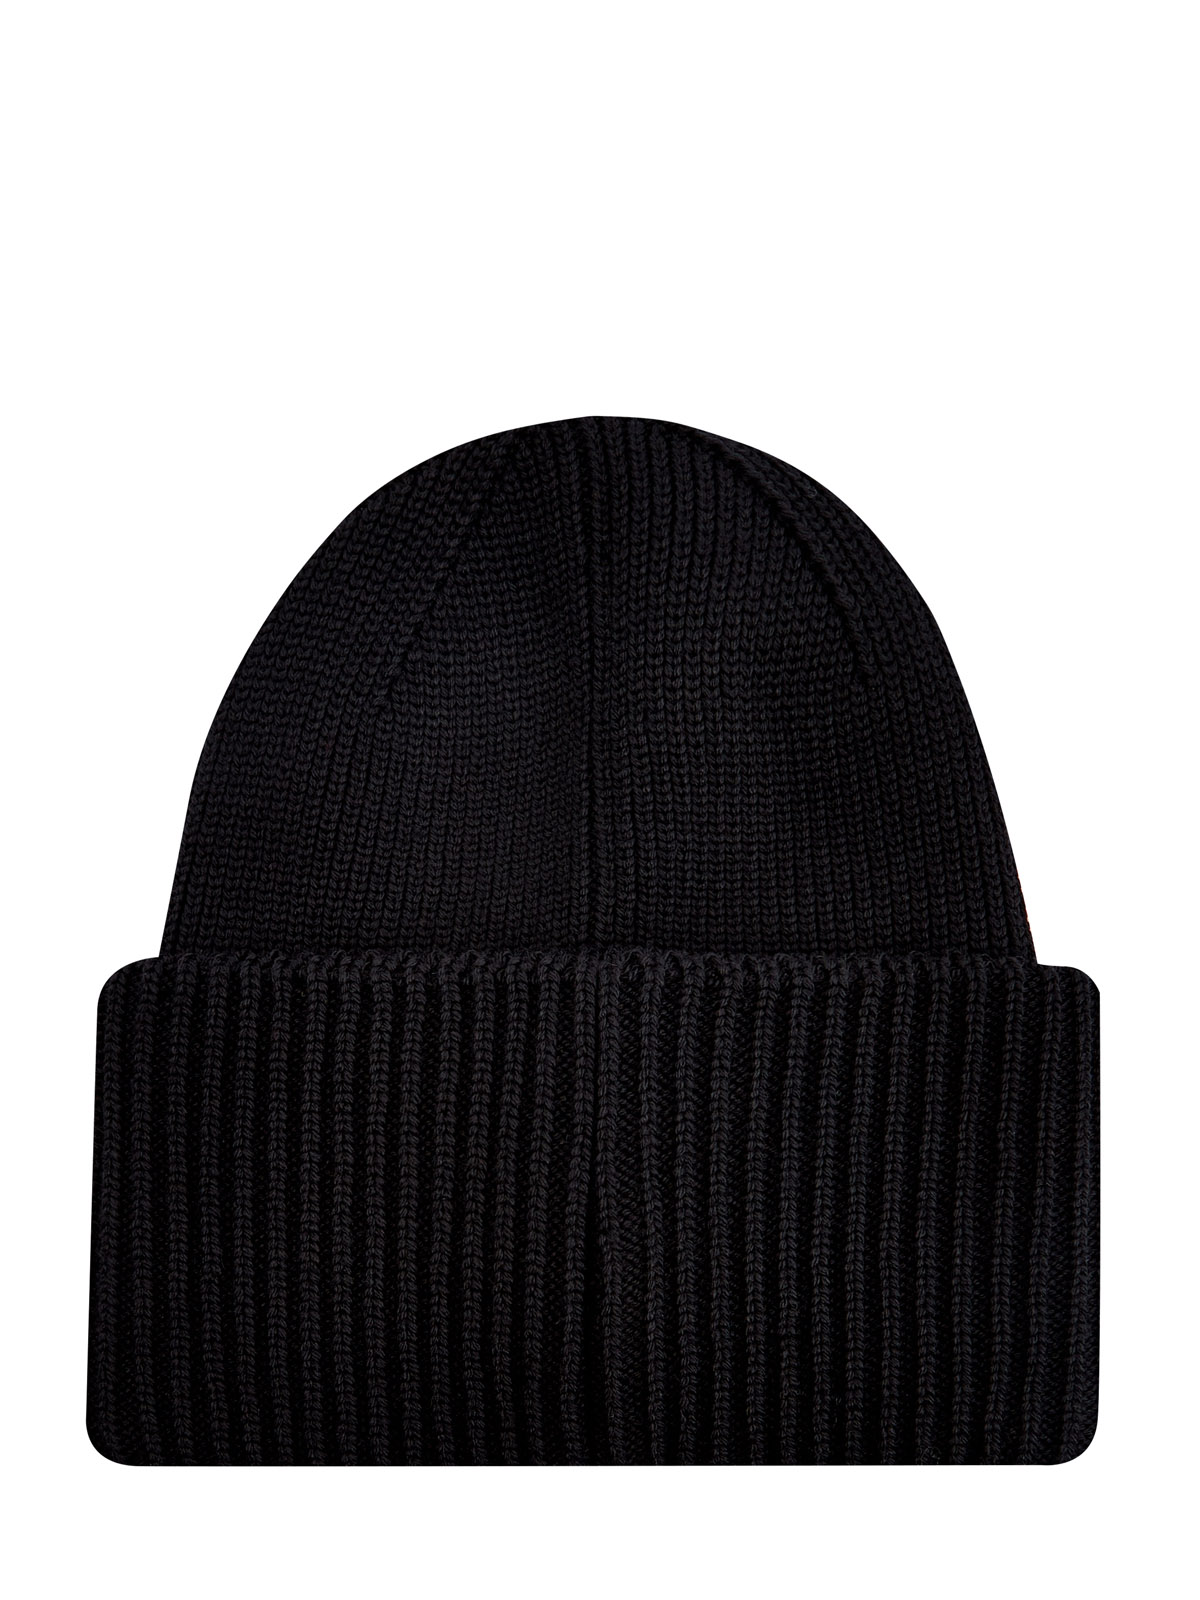 Шапка-бини Street Hat из шерсти мериноса с отворотом PARAJUMPERS, цвет черный, размер S;M;L - фото 2